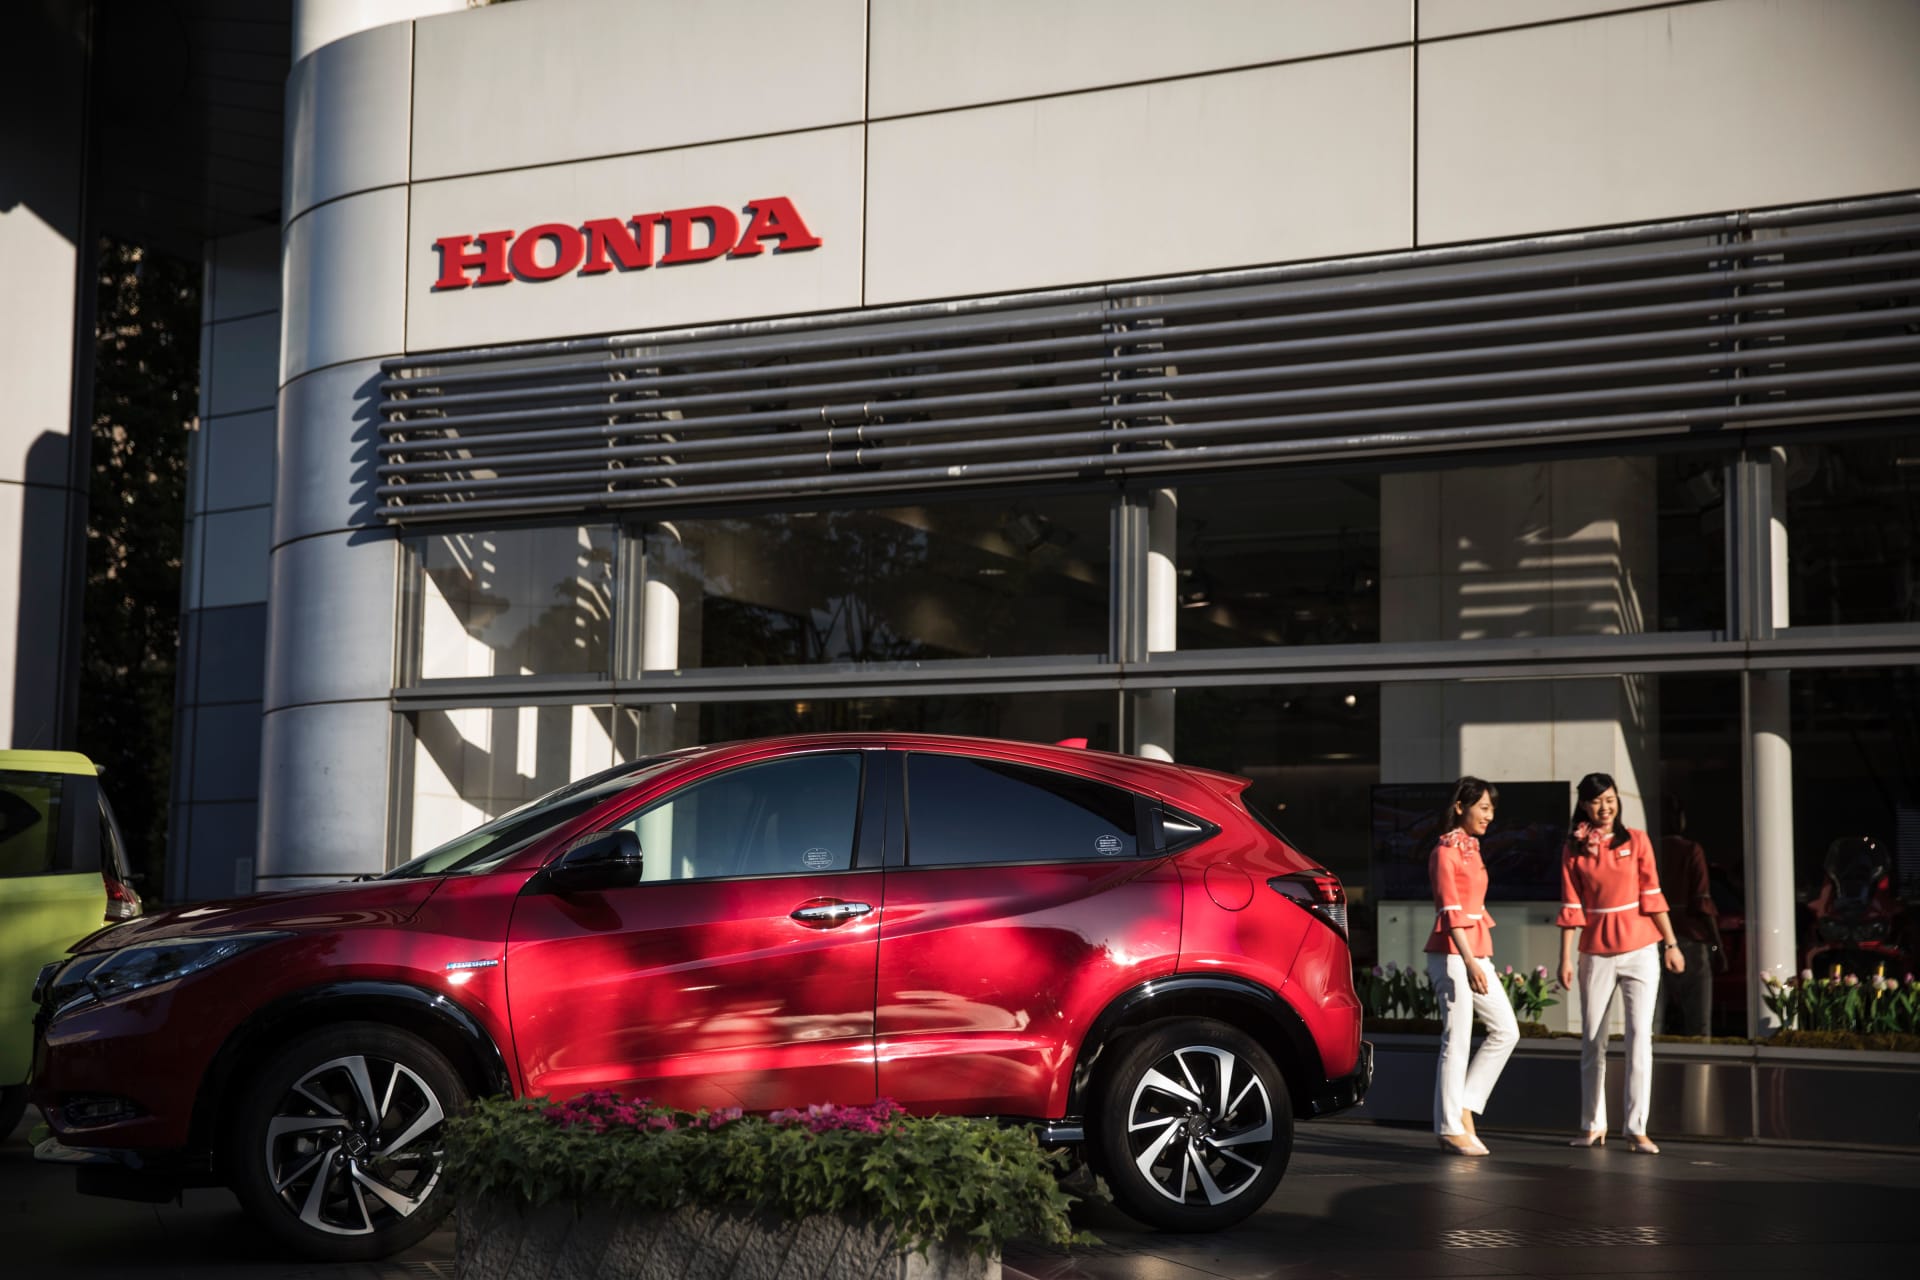 "هوندا" للسيارات تخطط لغلق مصنعها في بريطاينا عام 2021